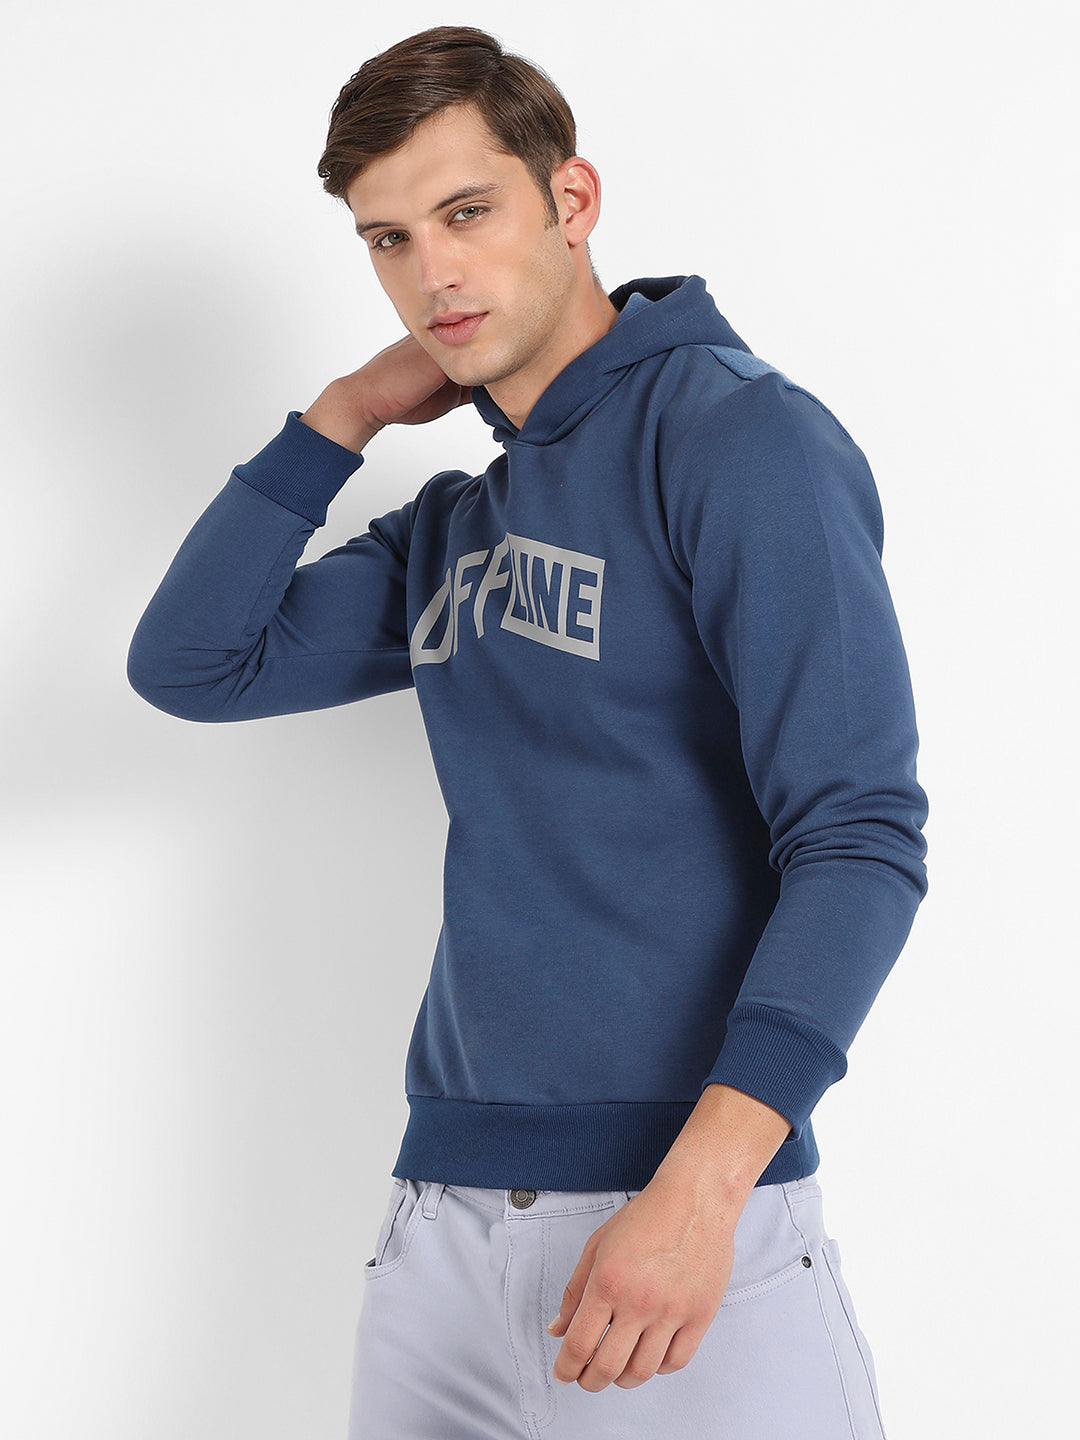 Redefined Pullover Sweatshirt